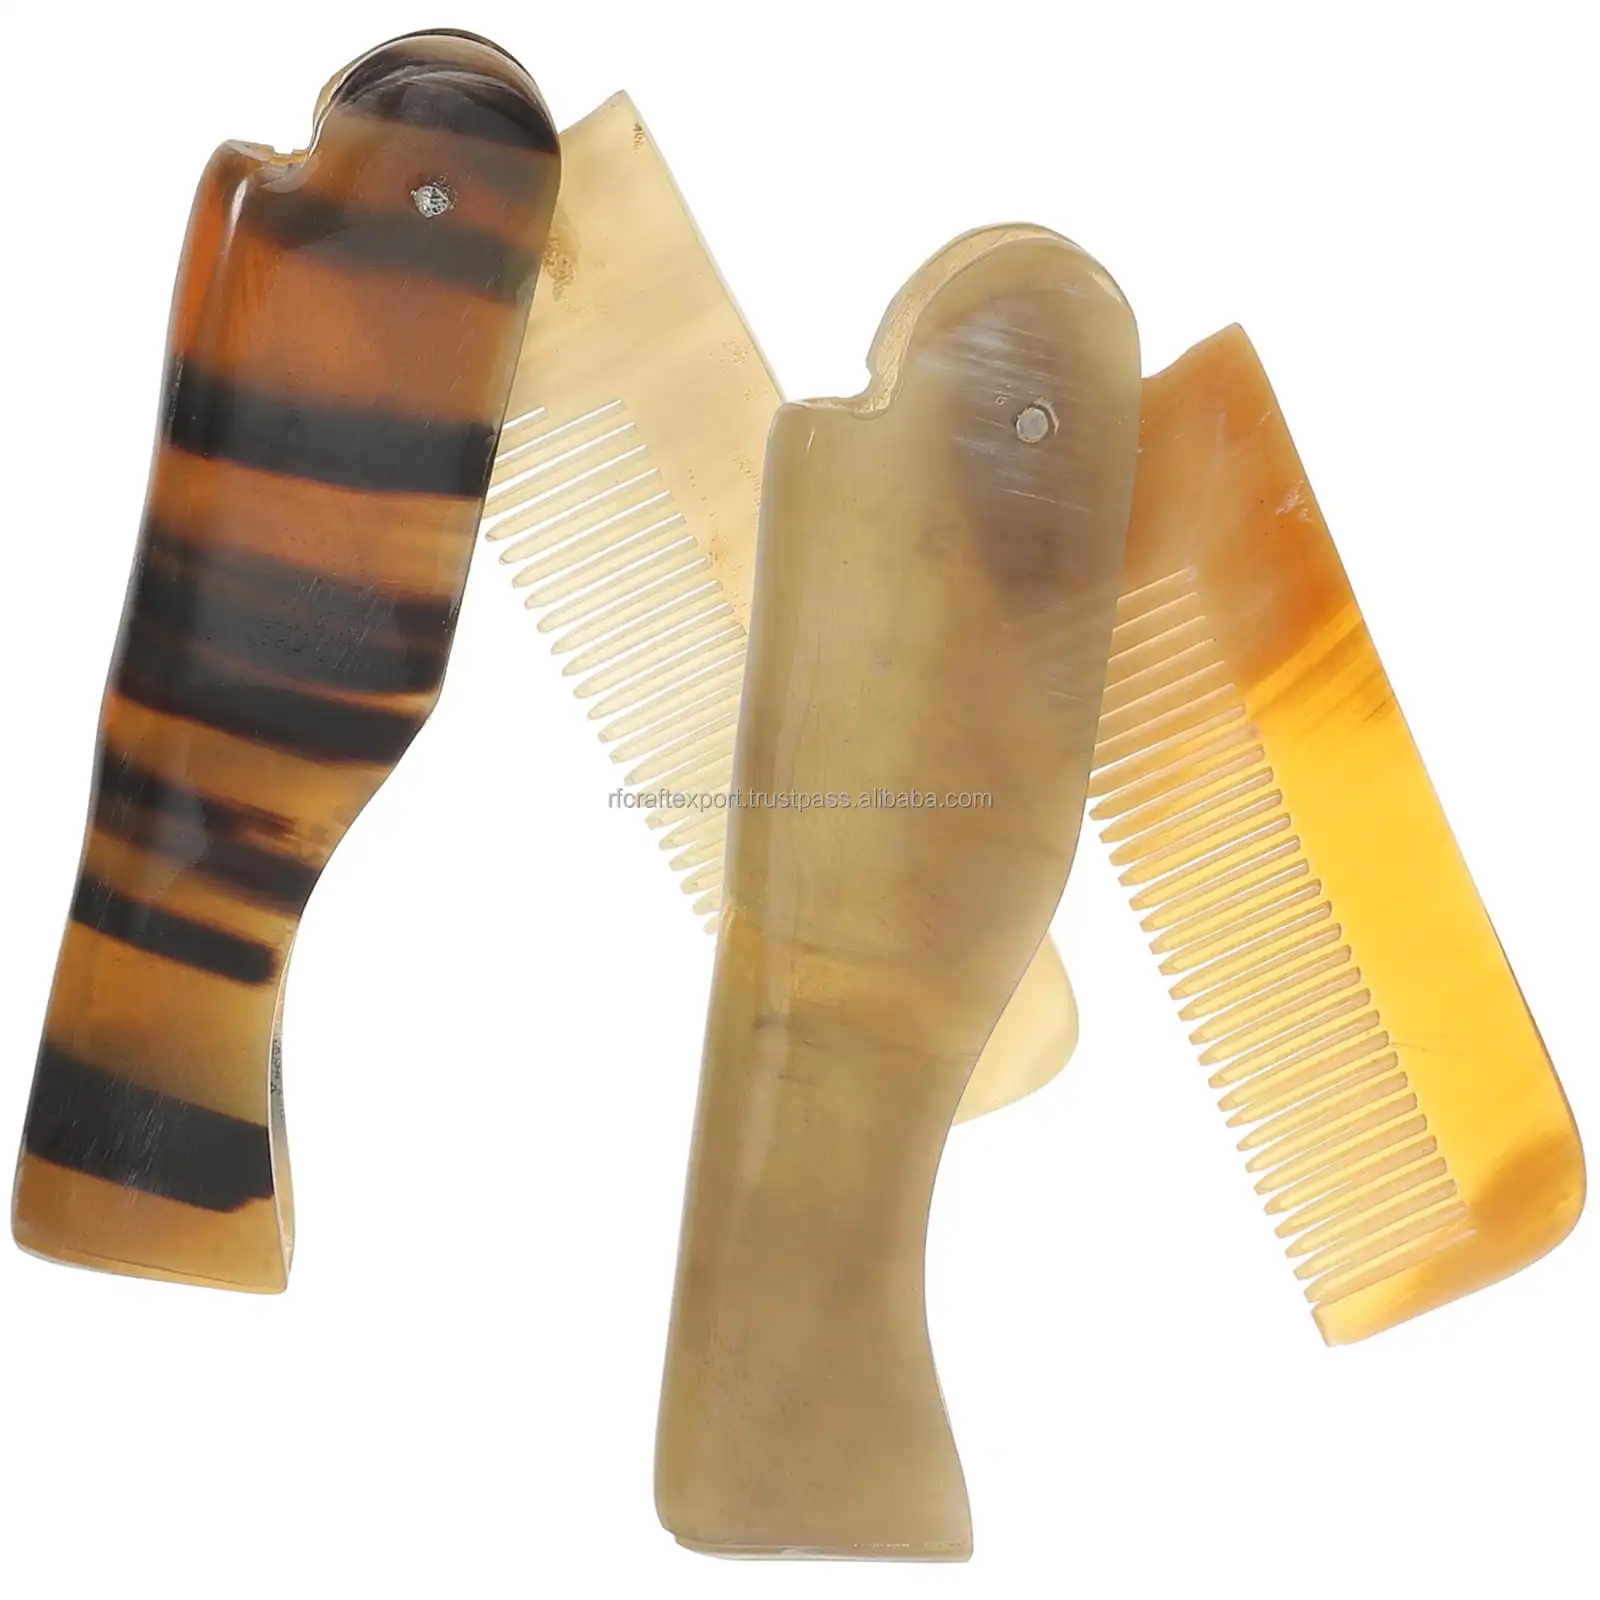 Nouveau peigne en corne de buffle en finition polie corne Art Ware peigne à dents fines peigne à cheveux antistatique pour hommes de l'Inde par RF Crafts